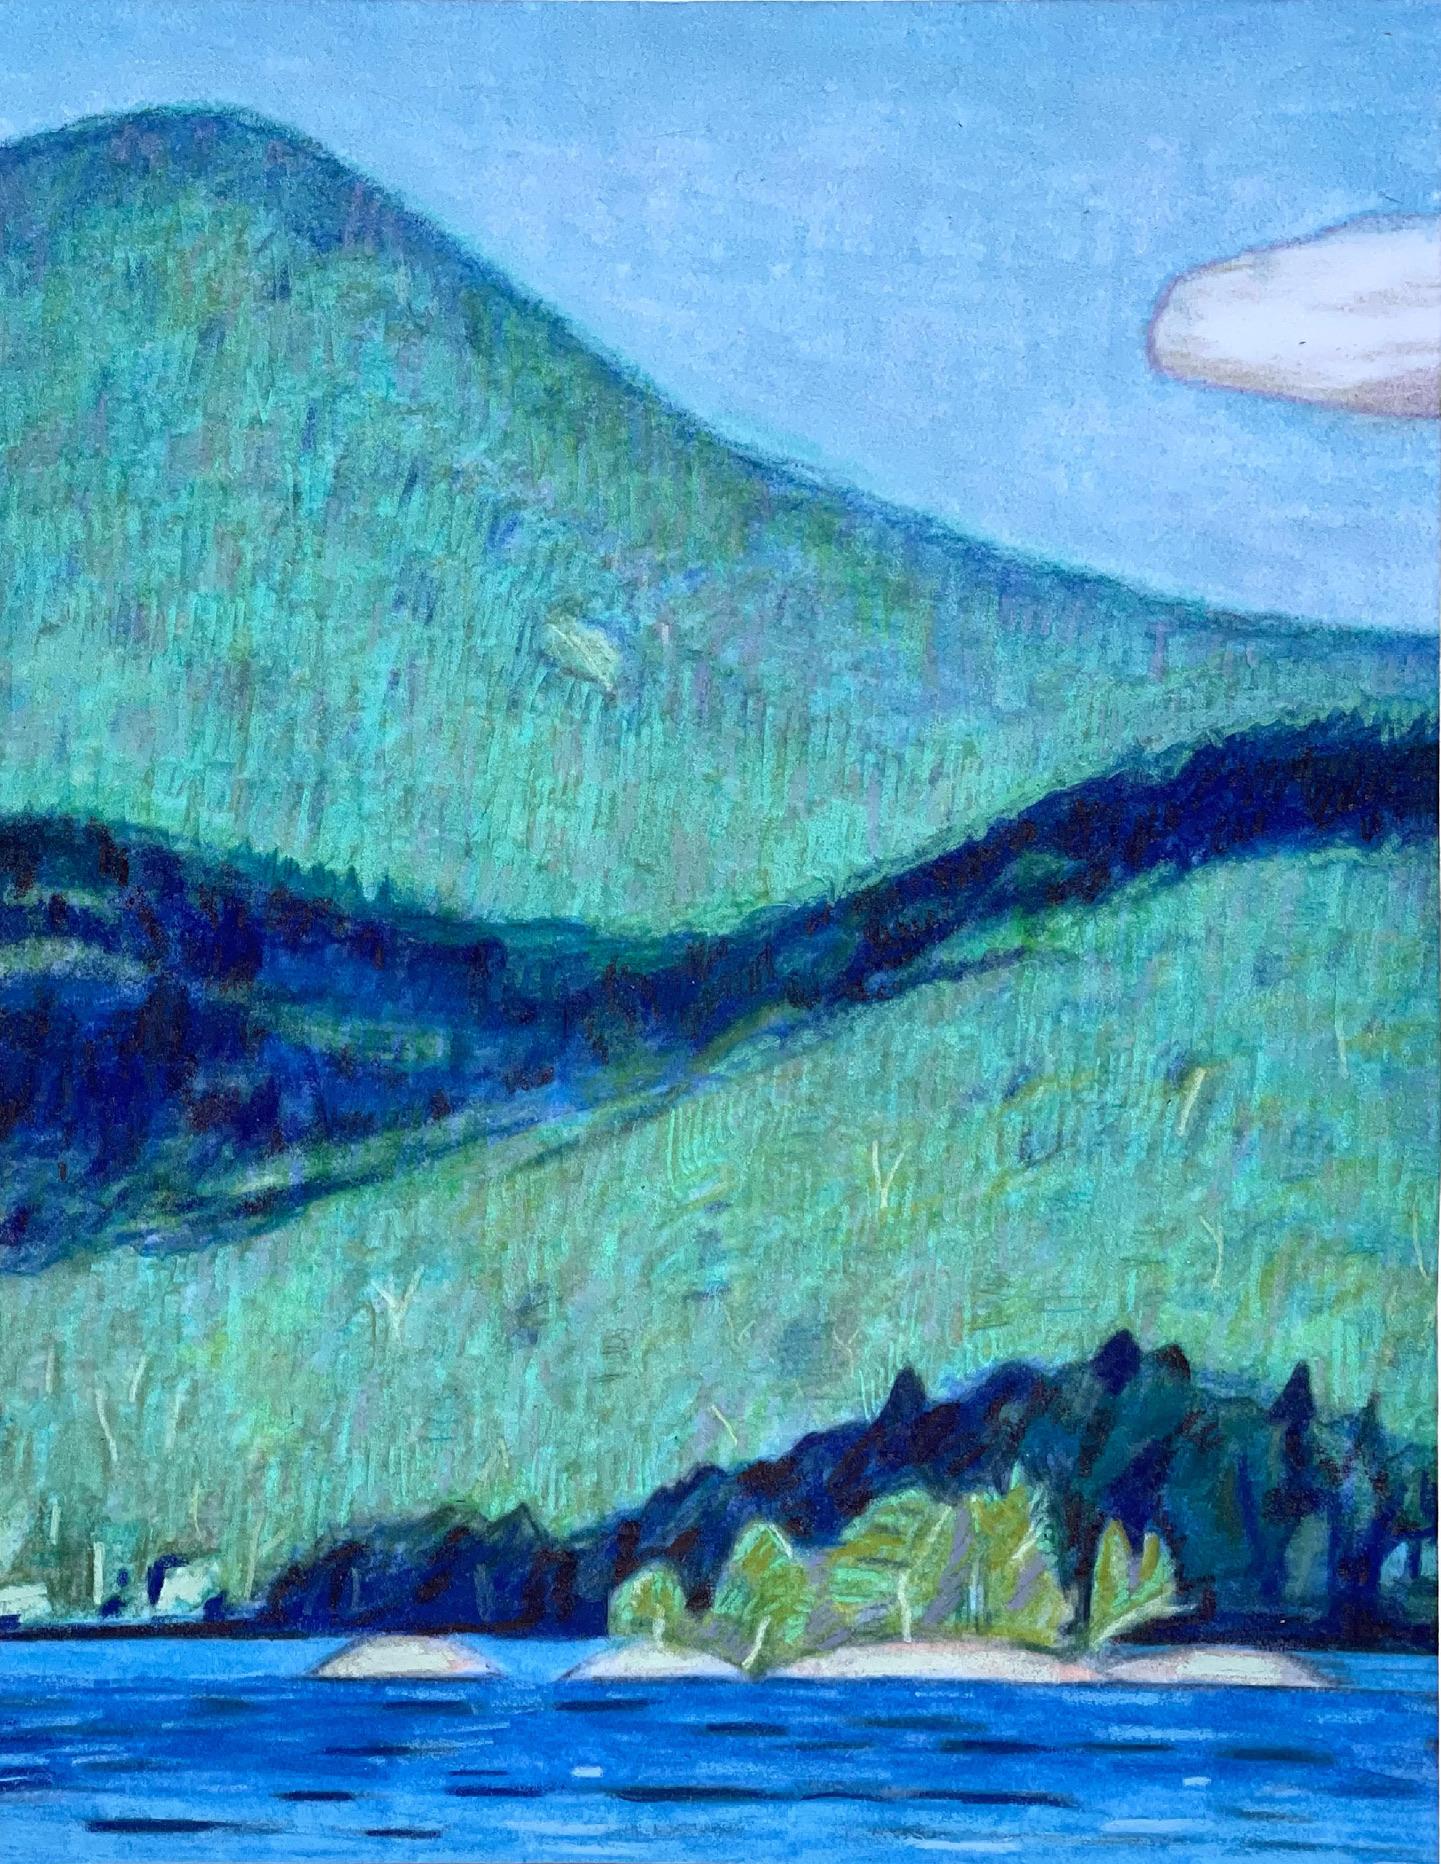 Le lac 7 (ombres de nuages), dessin de paysage post-impressionniste